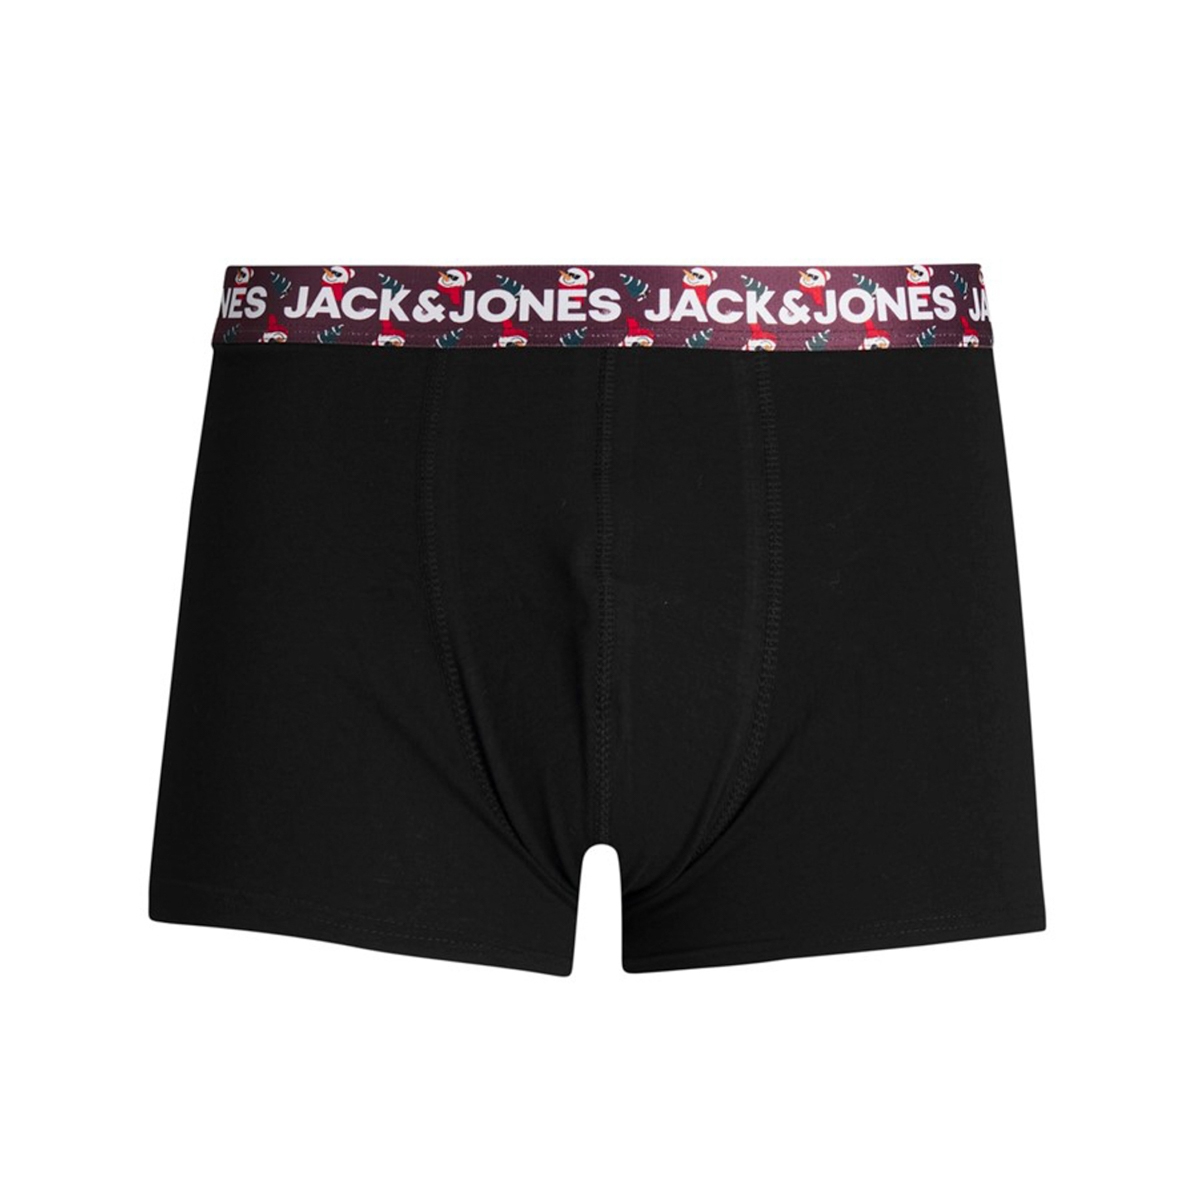 Flo JACK & JONES JACNICK TRUNKS 3 PACK Erkek Boxer. 4